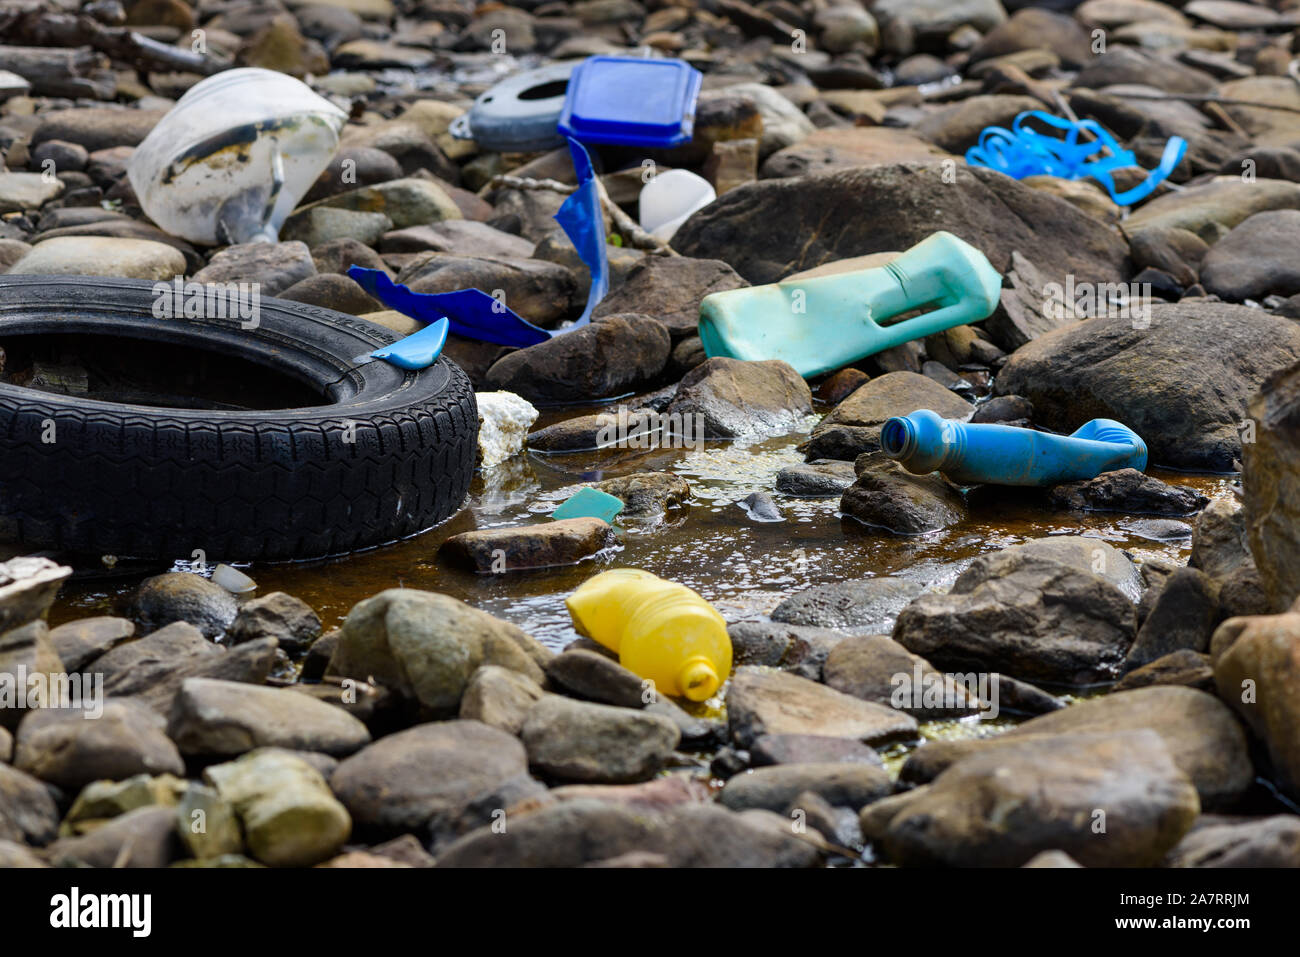 Les déchets en plastique polystyrène et pneu de voiture sur la côte de l'océan. La pollution de l'environnement problème écologique mondial. Banque D'Images